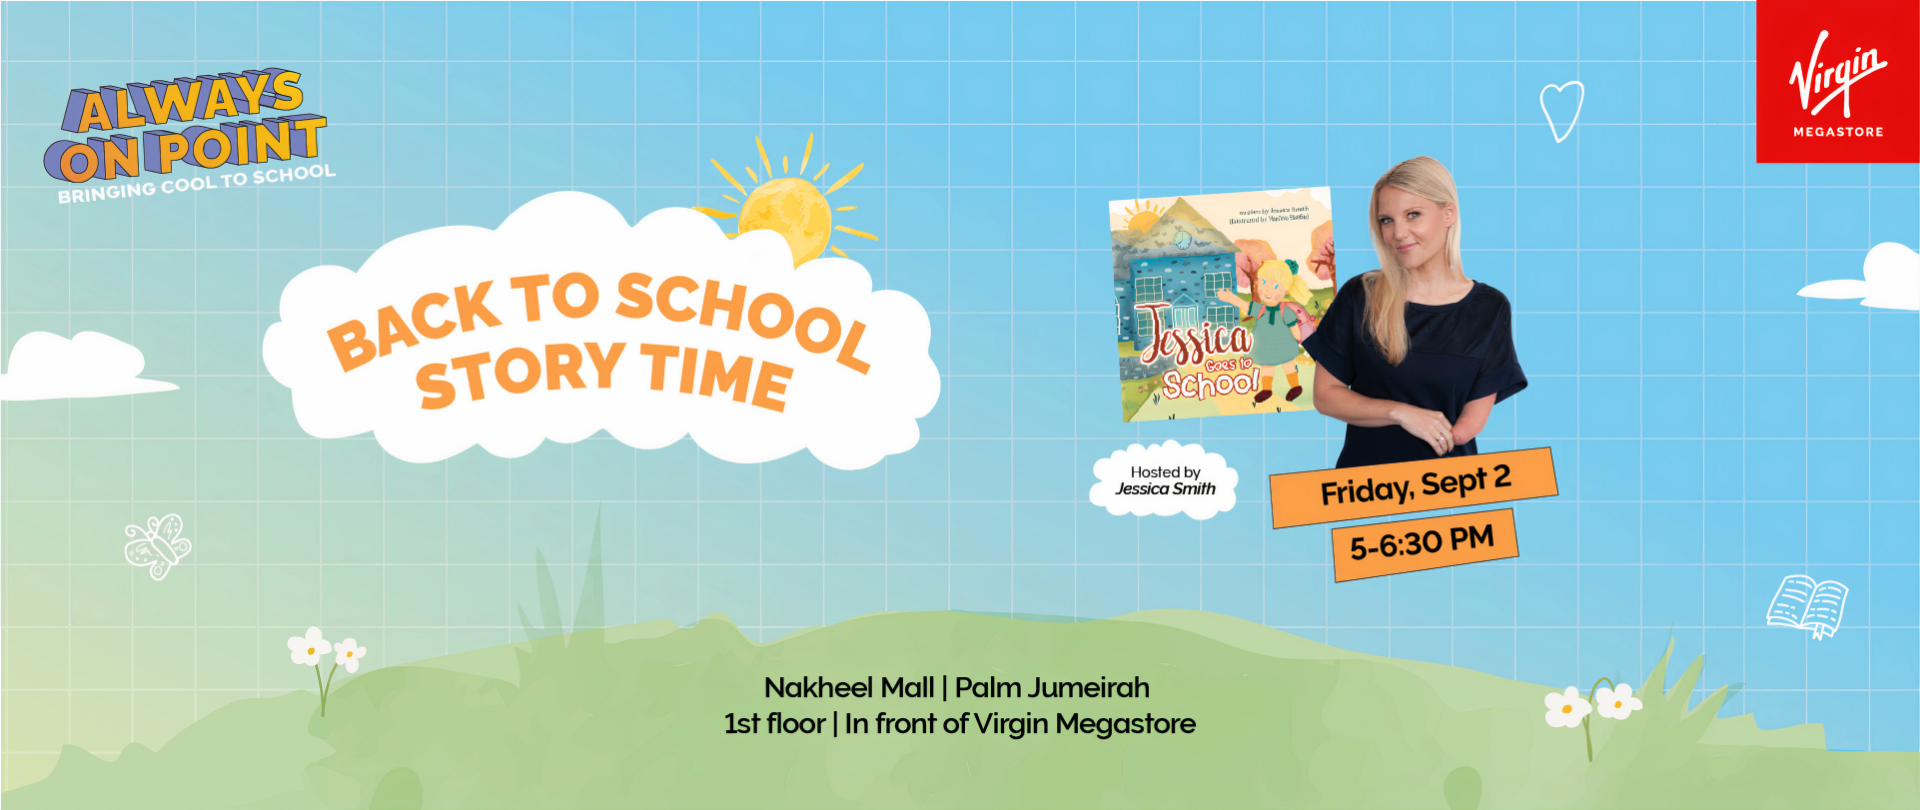 Join Virgin Megastore’s Back to School Storytime! 